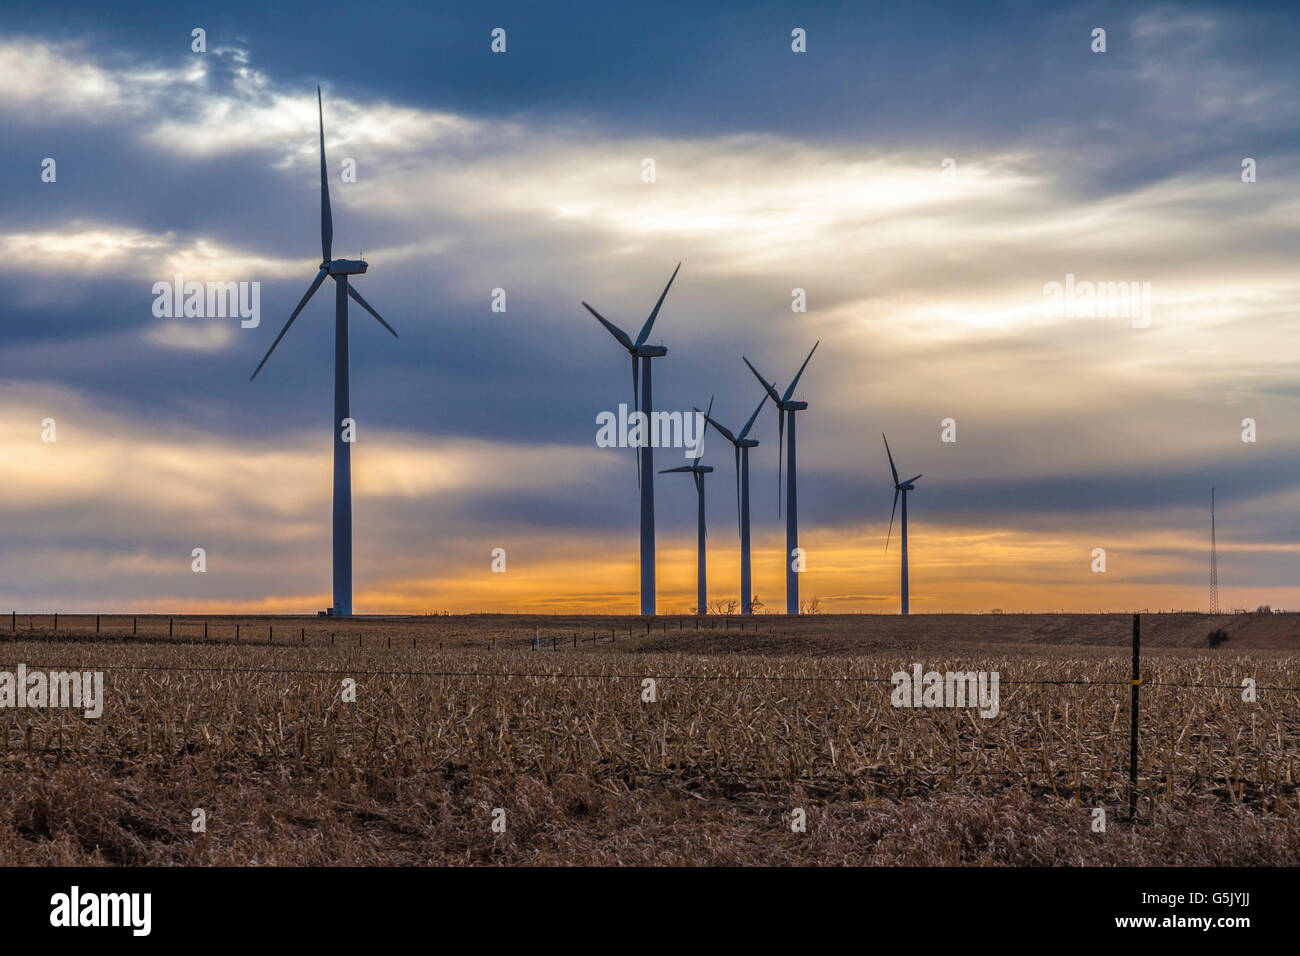 Wind turbine generators at wind farm in rural north eastern Nebraska Stock Photo